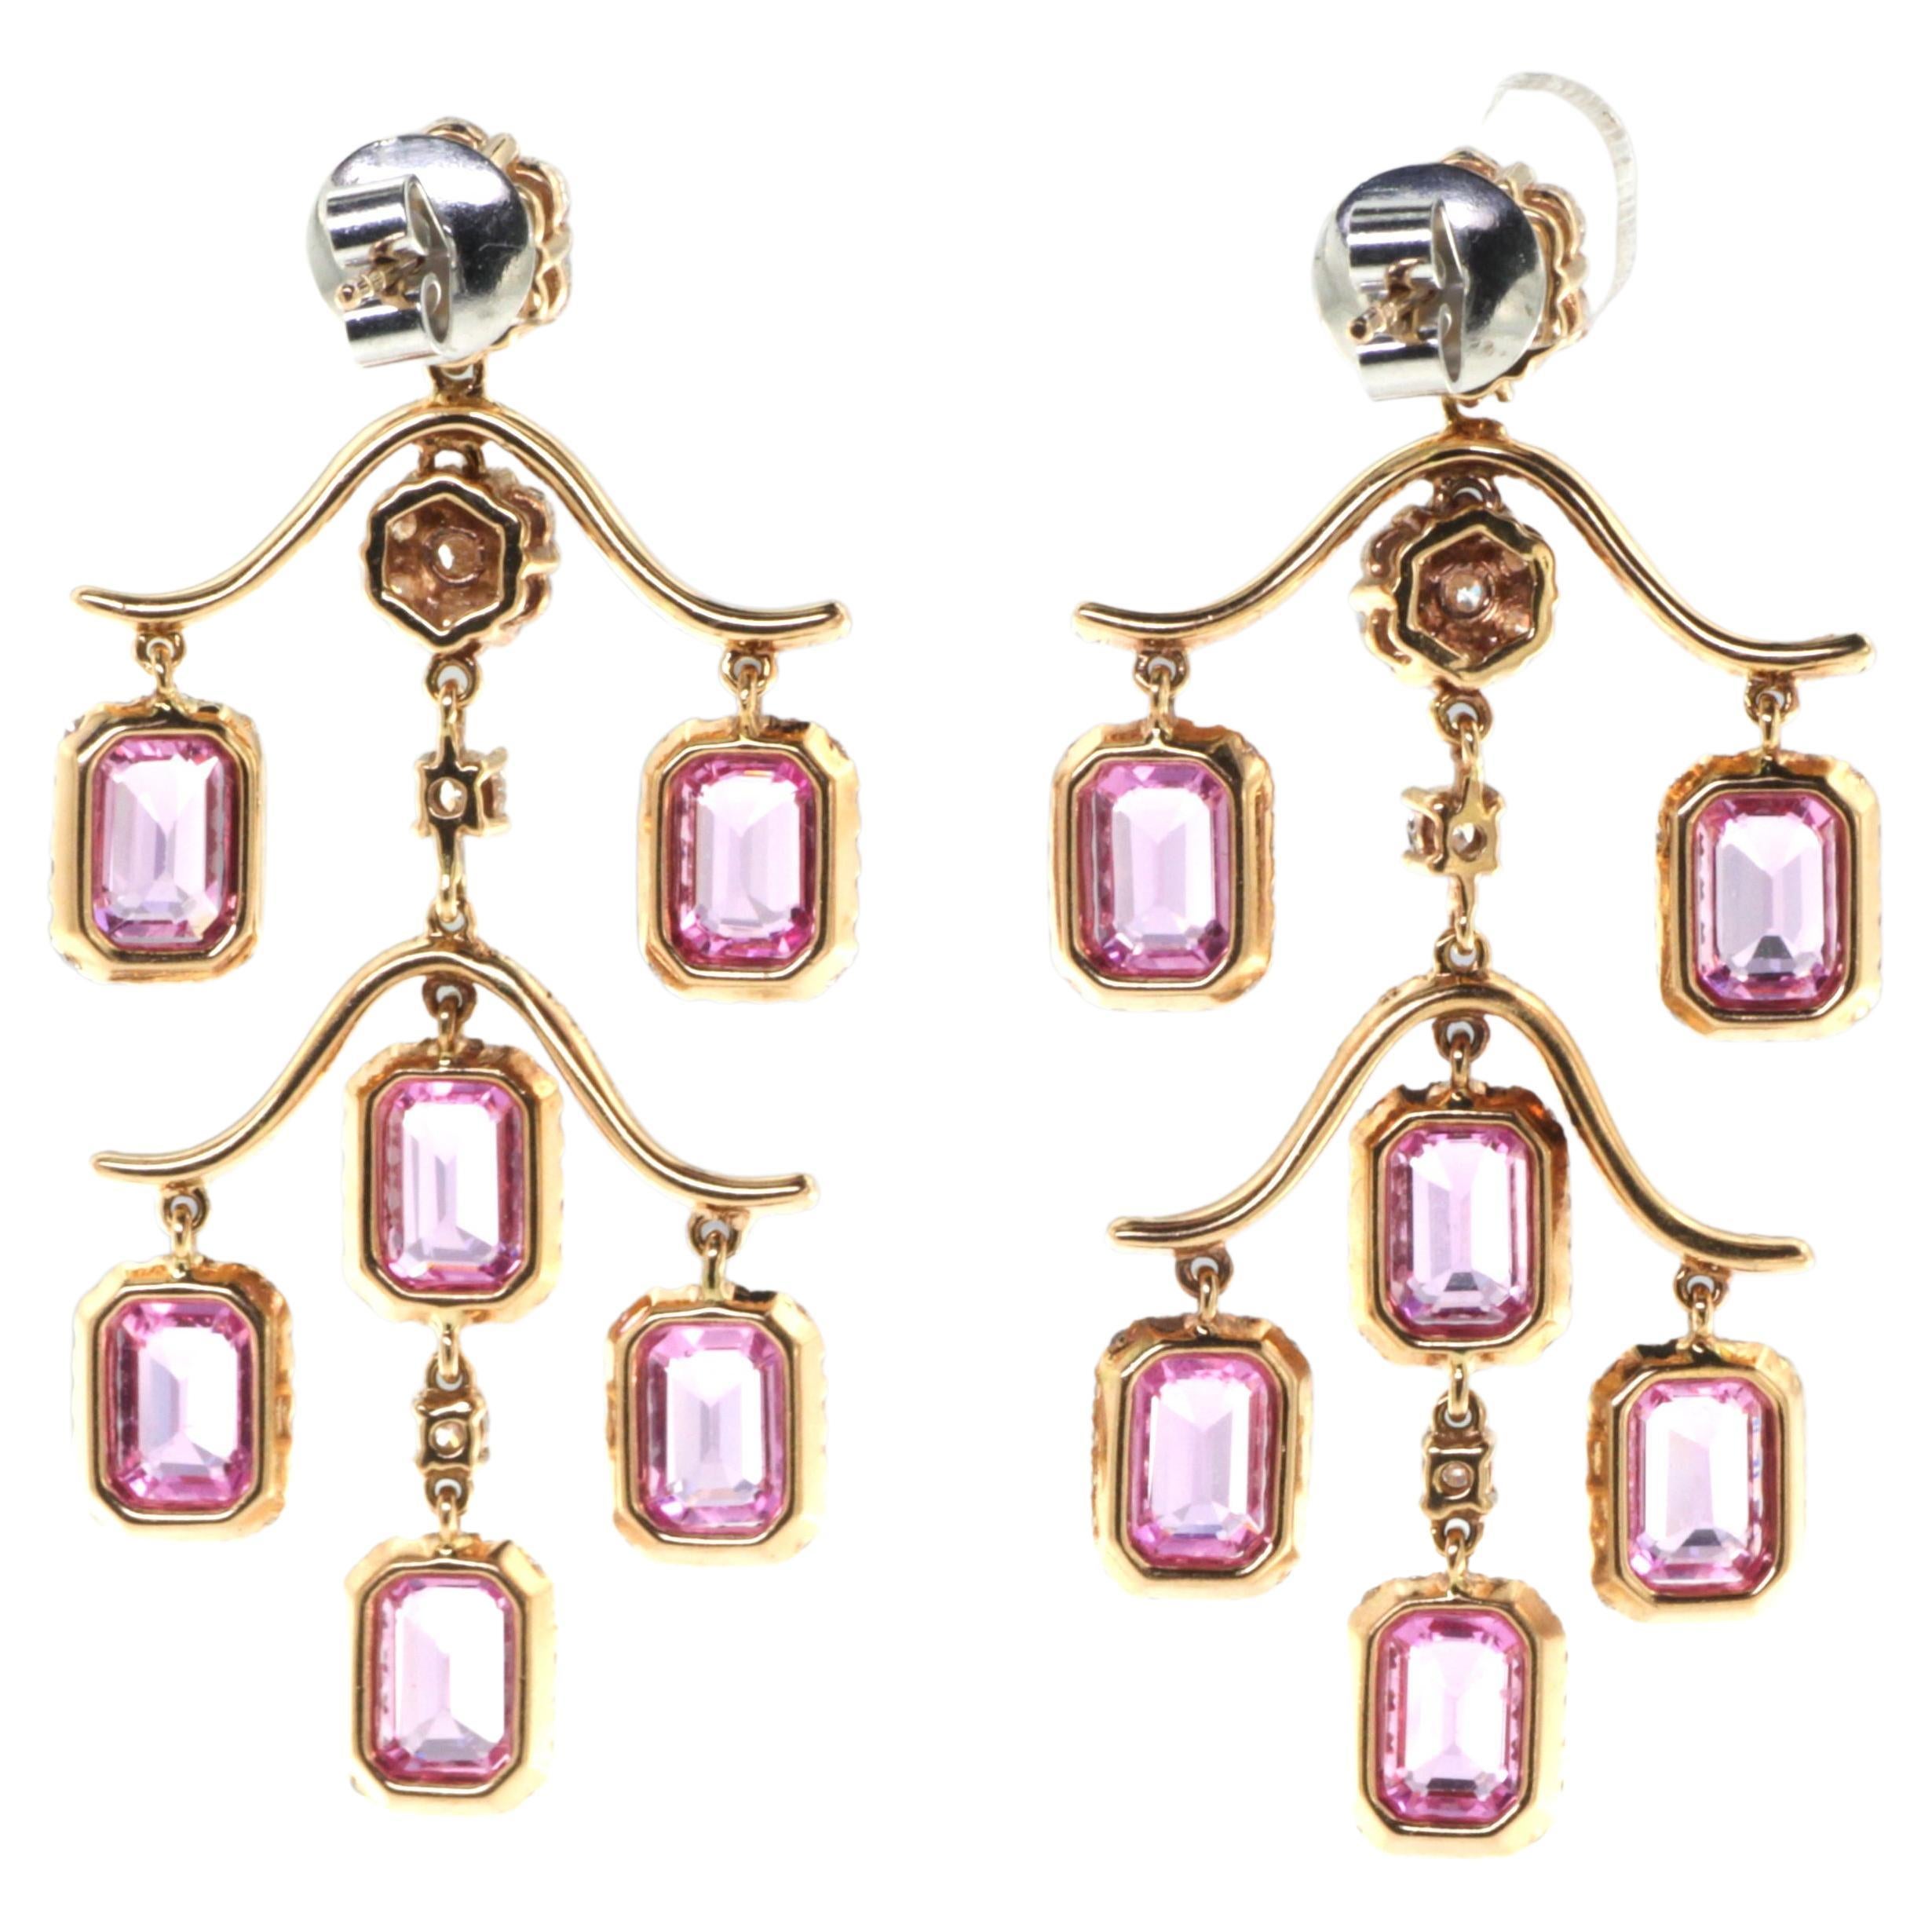 Die 7,38 Karat Pink Sapphire Diamonds Chandelier Earrings strahlen Eleganz und Luxus aus. Die sorgfältig aus 18-karätigem Roségold gefertigten Schmuckstücke sind eine meisterhafte Mischung aus Design und Handwerkskunst. Die strahlenden rosafarbenen